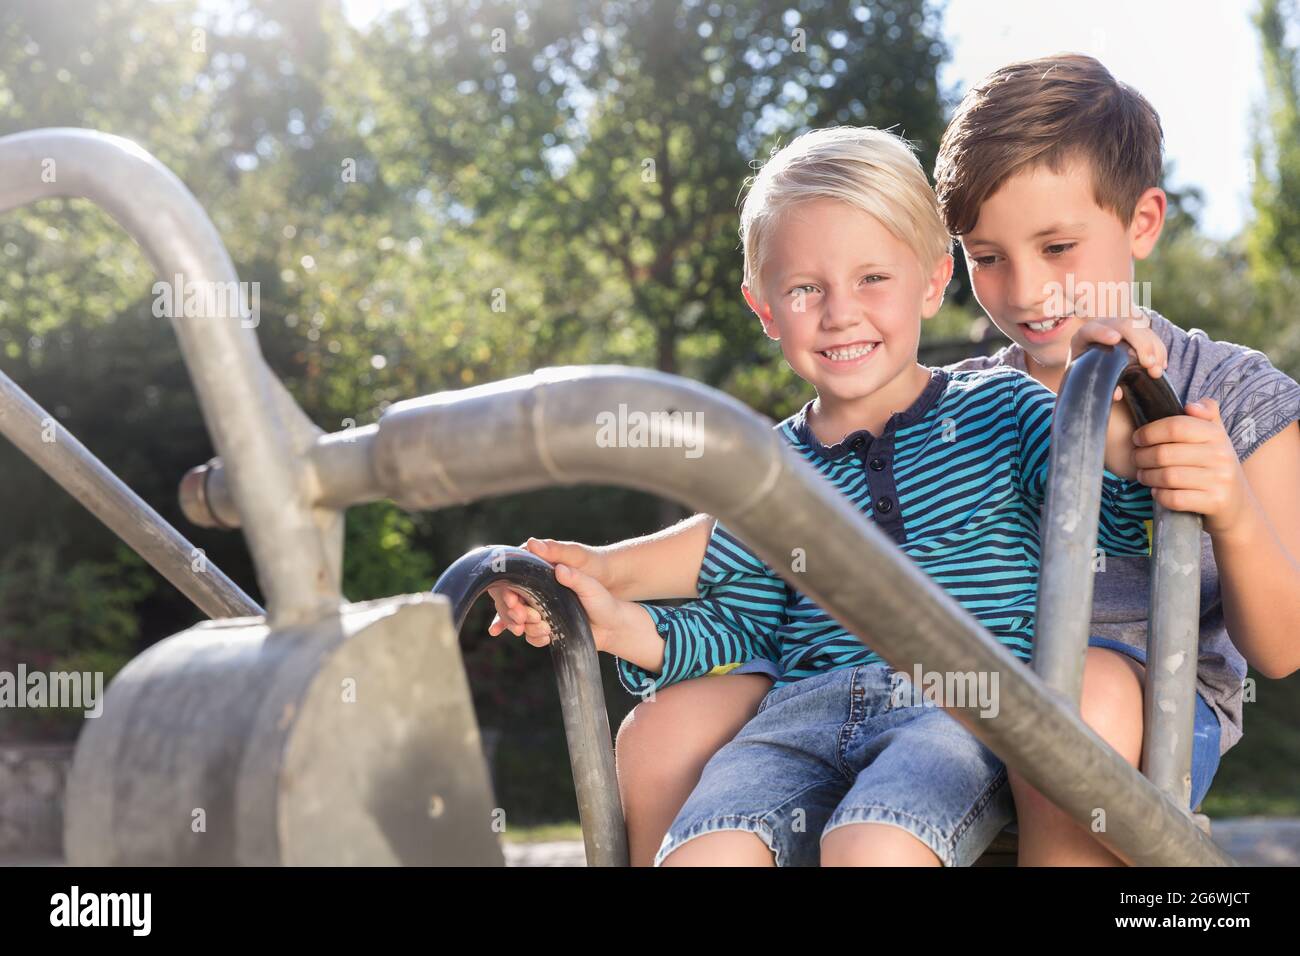 Zwei Jungen mit Digger auf Abenteuer Spielplatz im Park Stockfoto